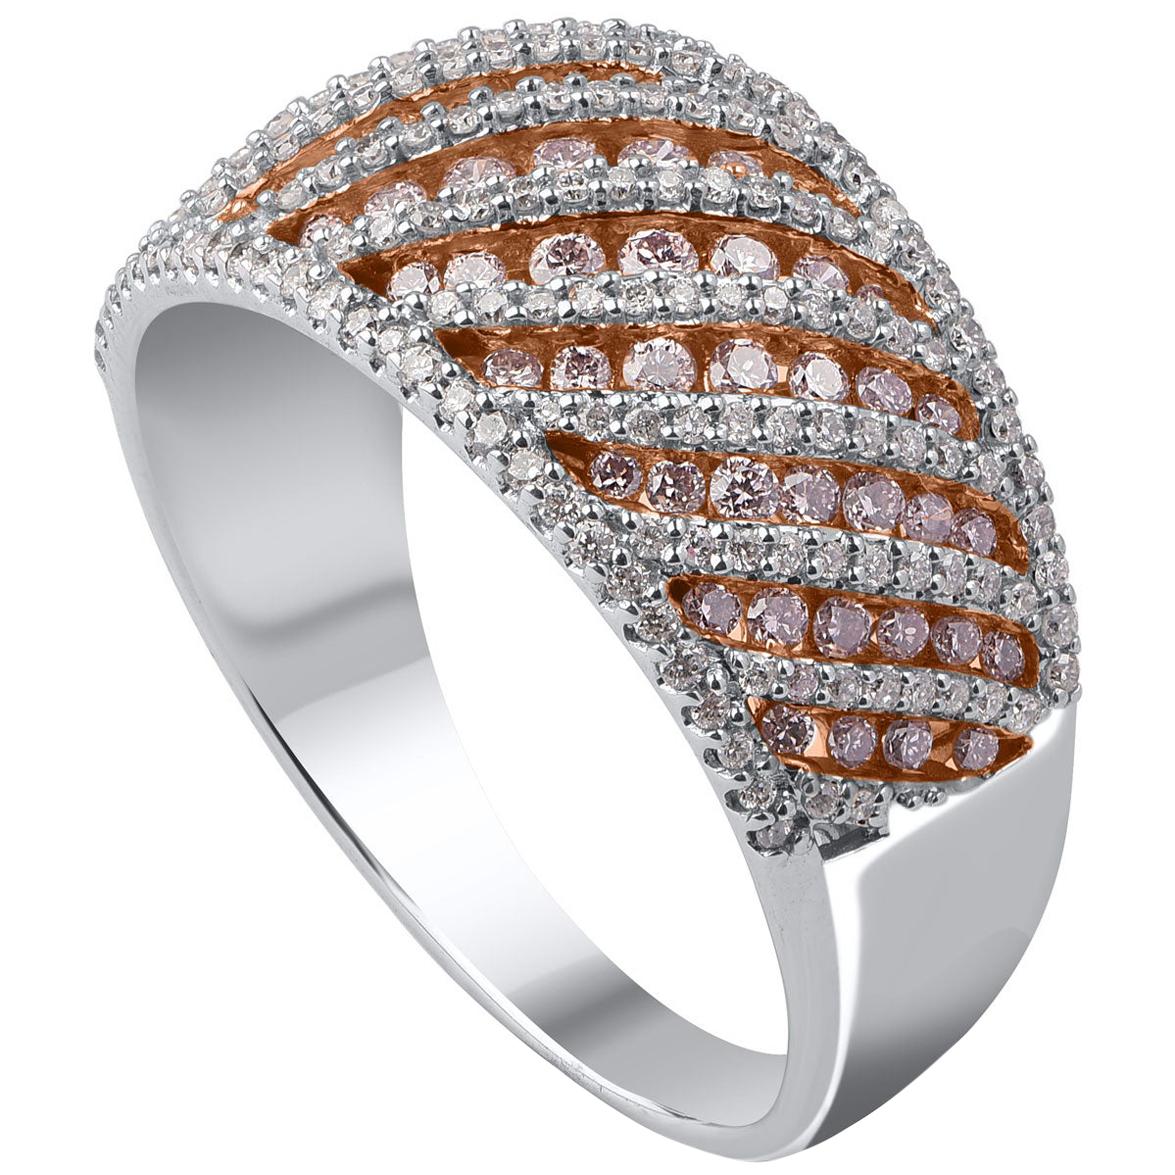 Réalisé par nos habiles artisans en or blanc 18 carats et constellé de 168 diamants taille ronde et 69 diamants roses naturels rosés en sertissage à griffes et en canal. Les diamants sont classés couleur H-I, clarté I1. 

La taille de la bague est